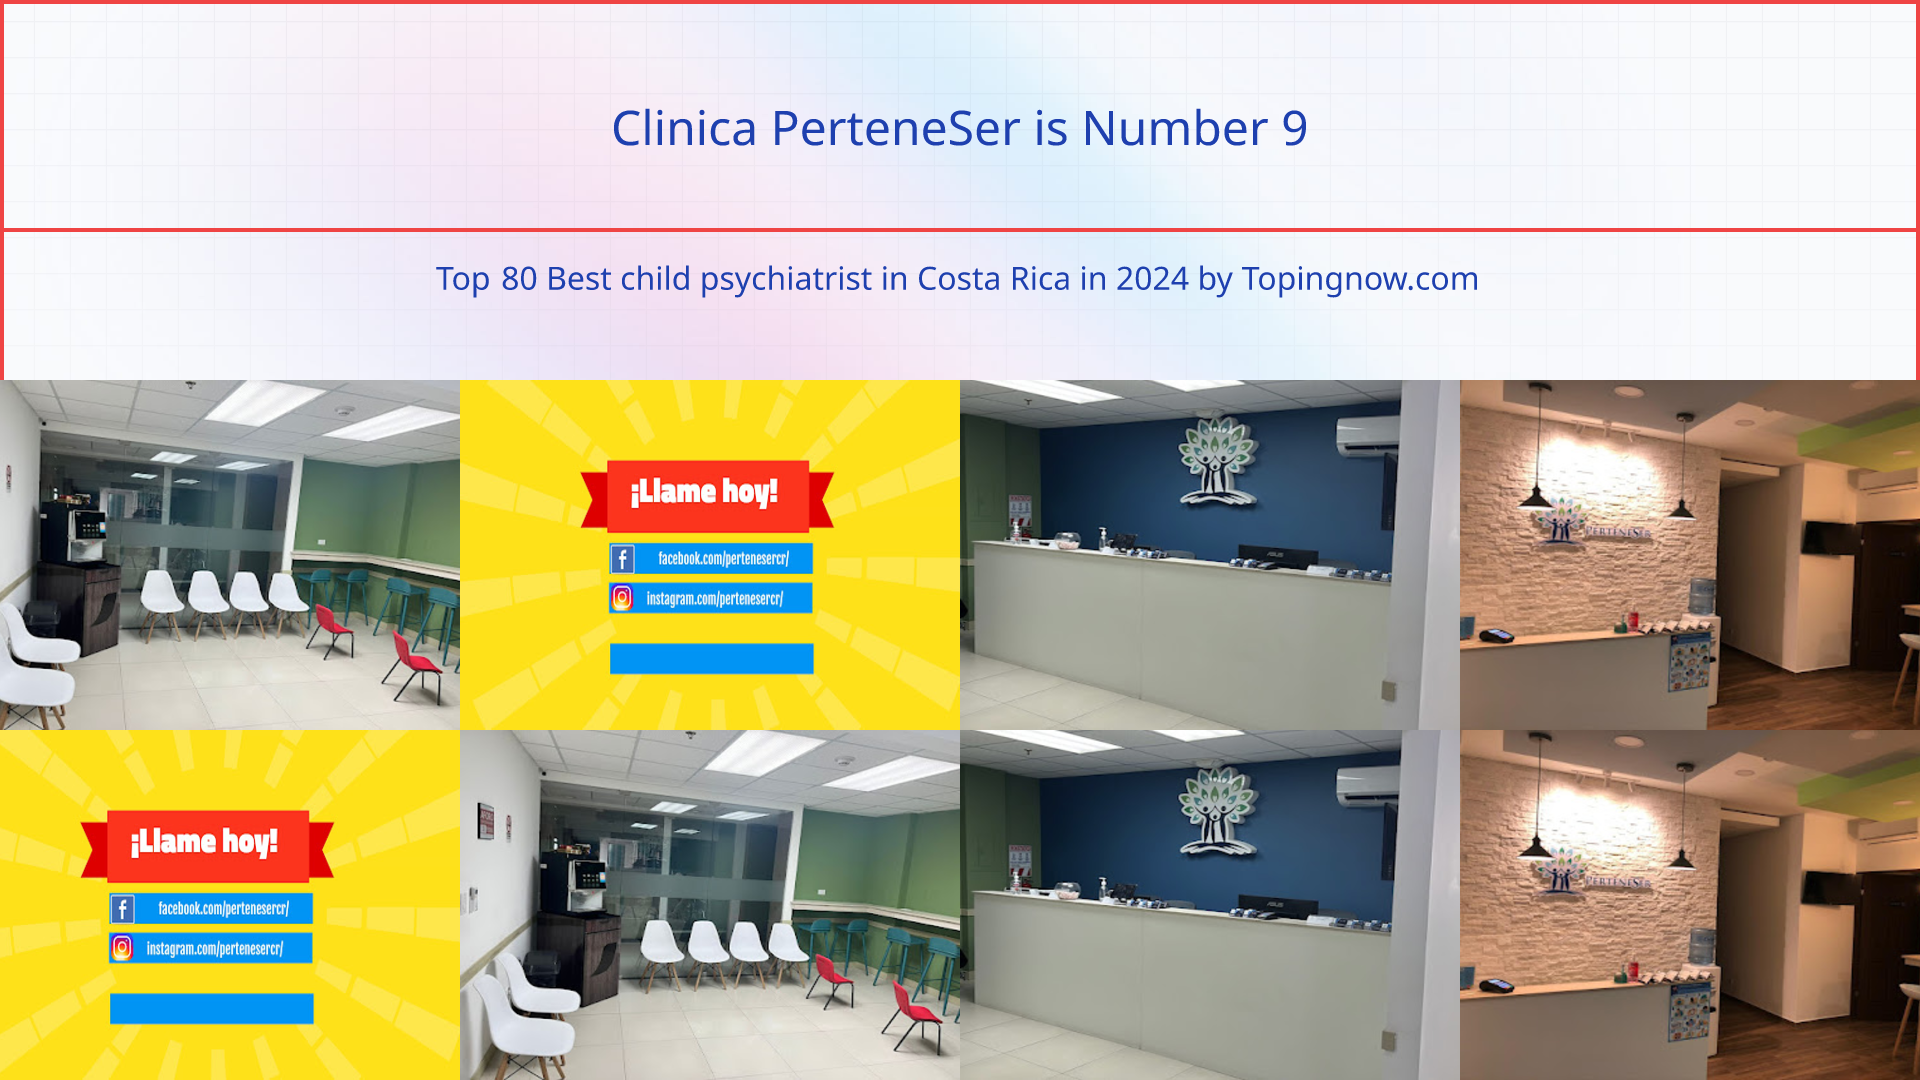 Clinica PerteneSer: Top 80 Best child psychiatrist in Costa Rica in 2024